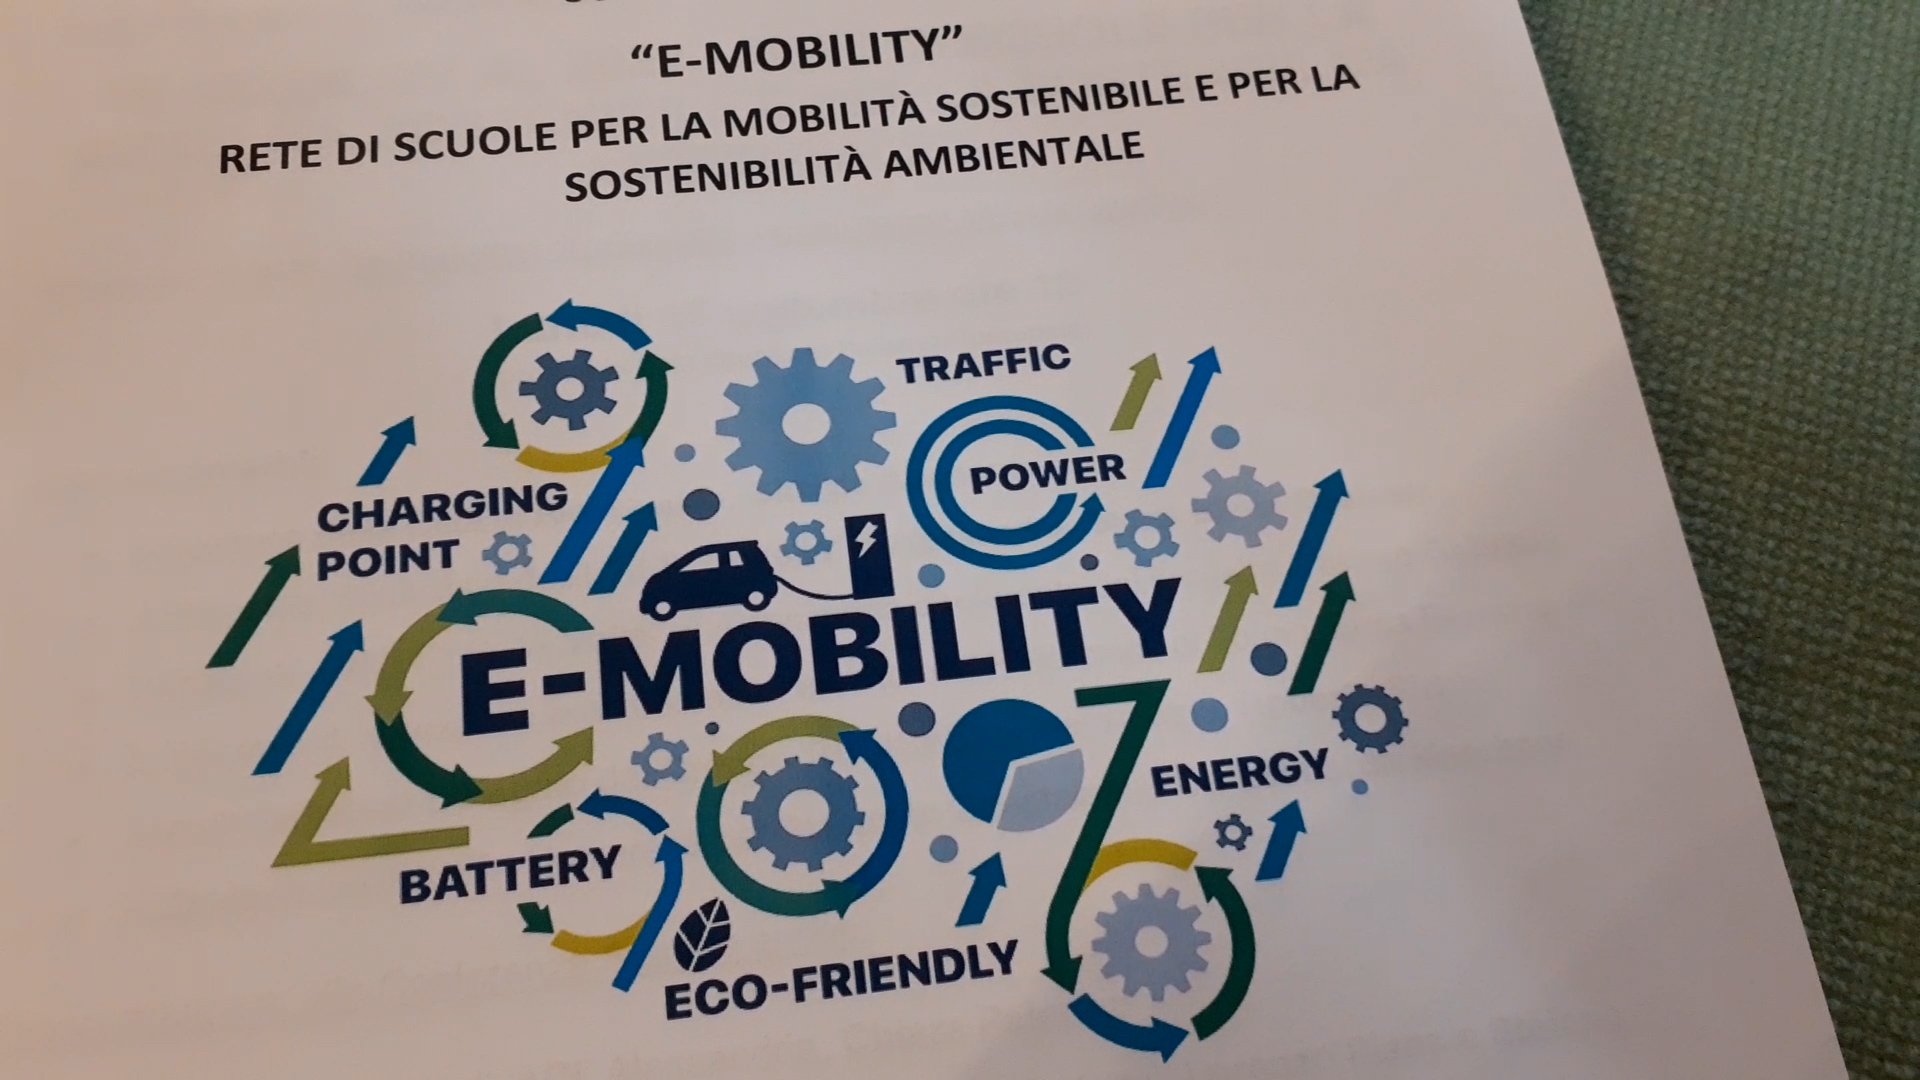 Mobilità sostenibile e auto elettriche all’Istituto Volta: venerdì una giornata aperta a studenti e cittadini